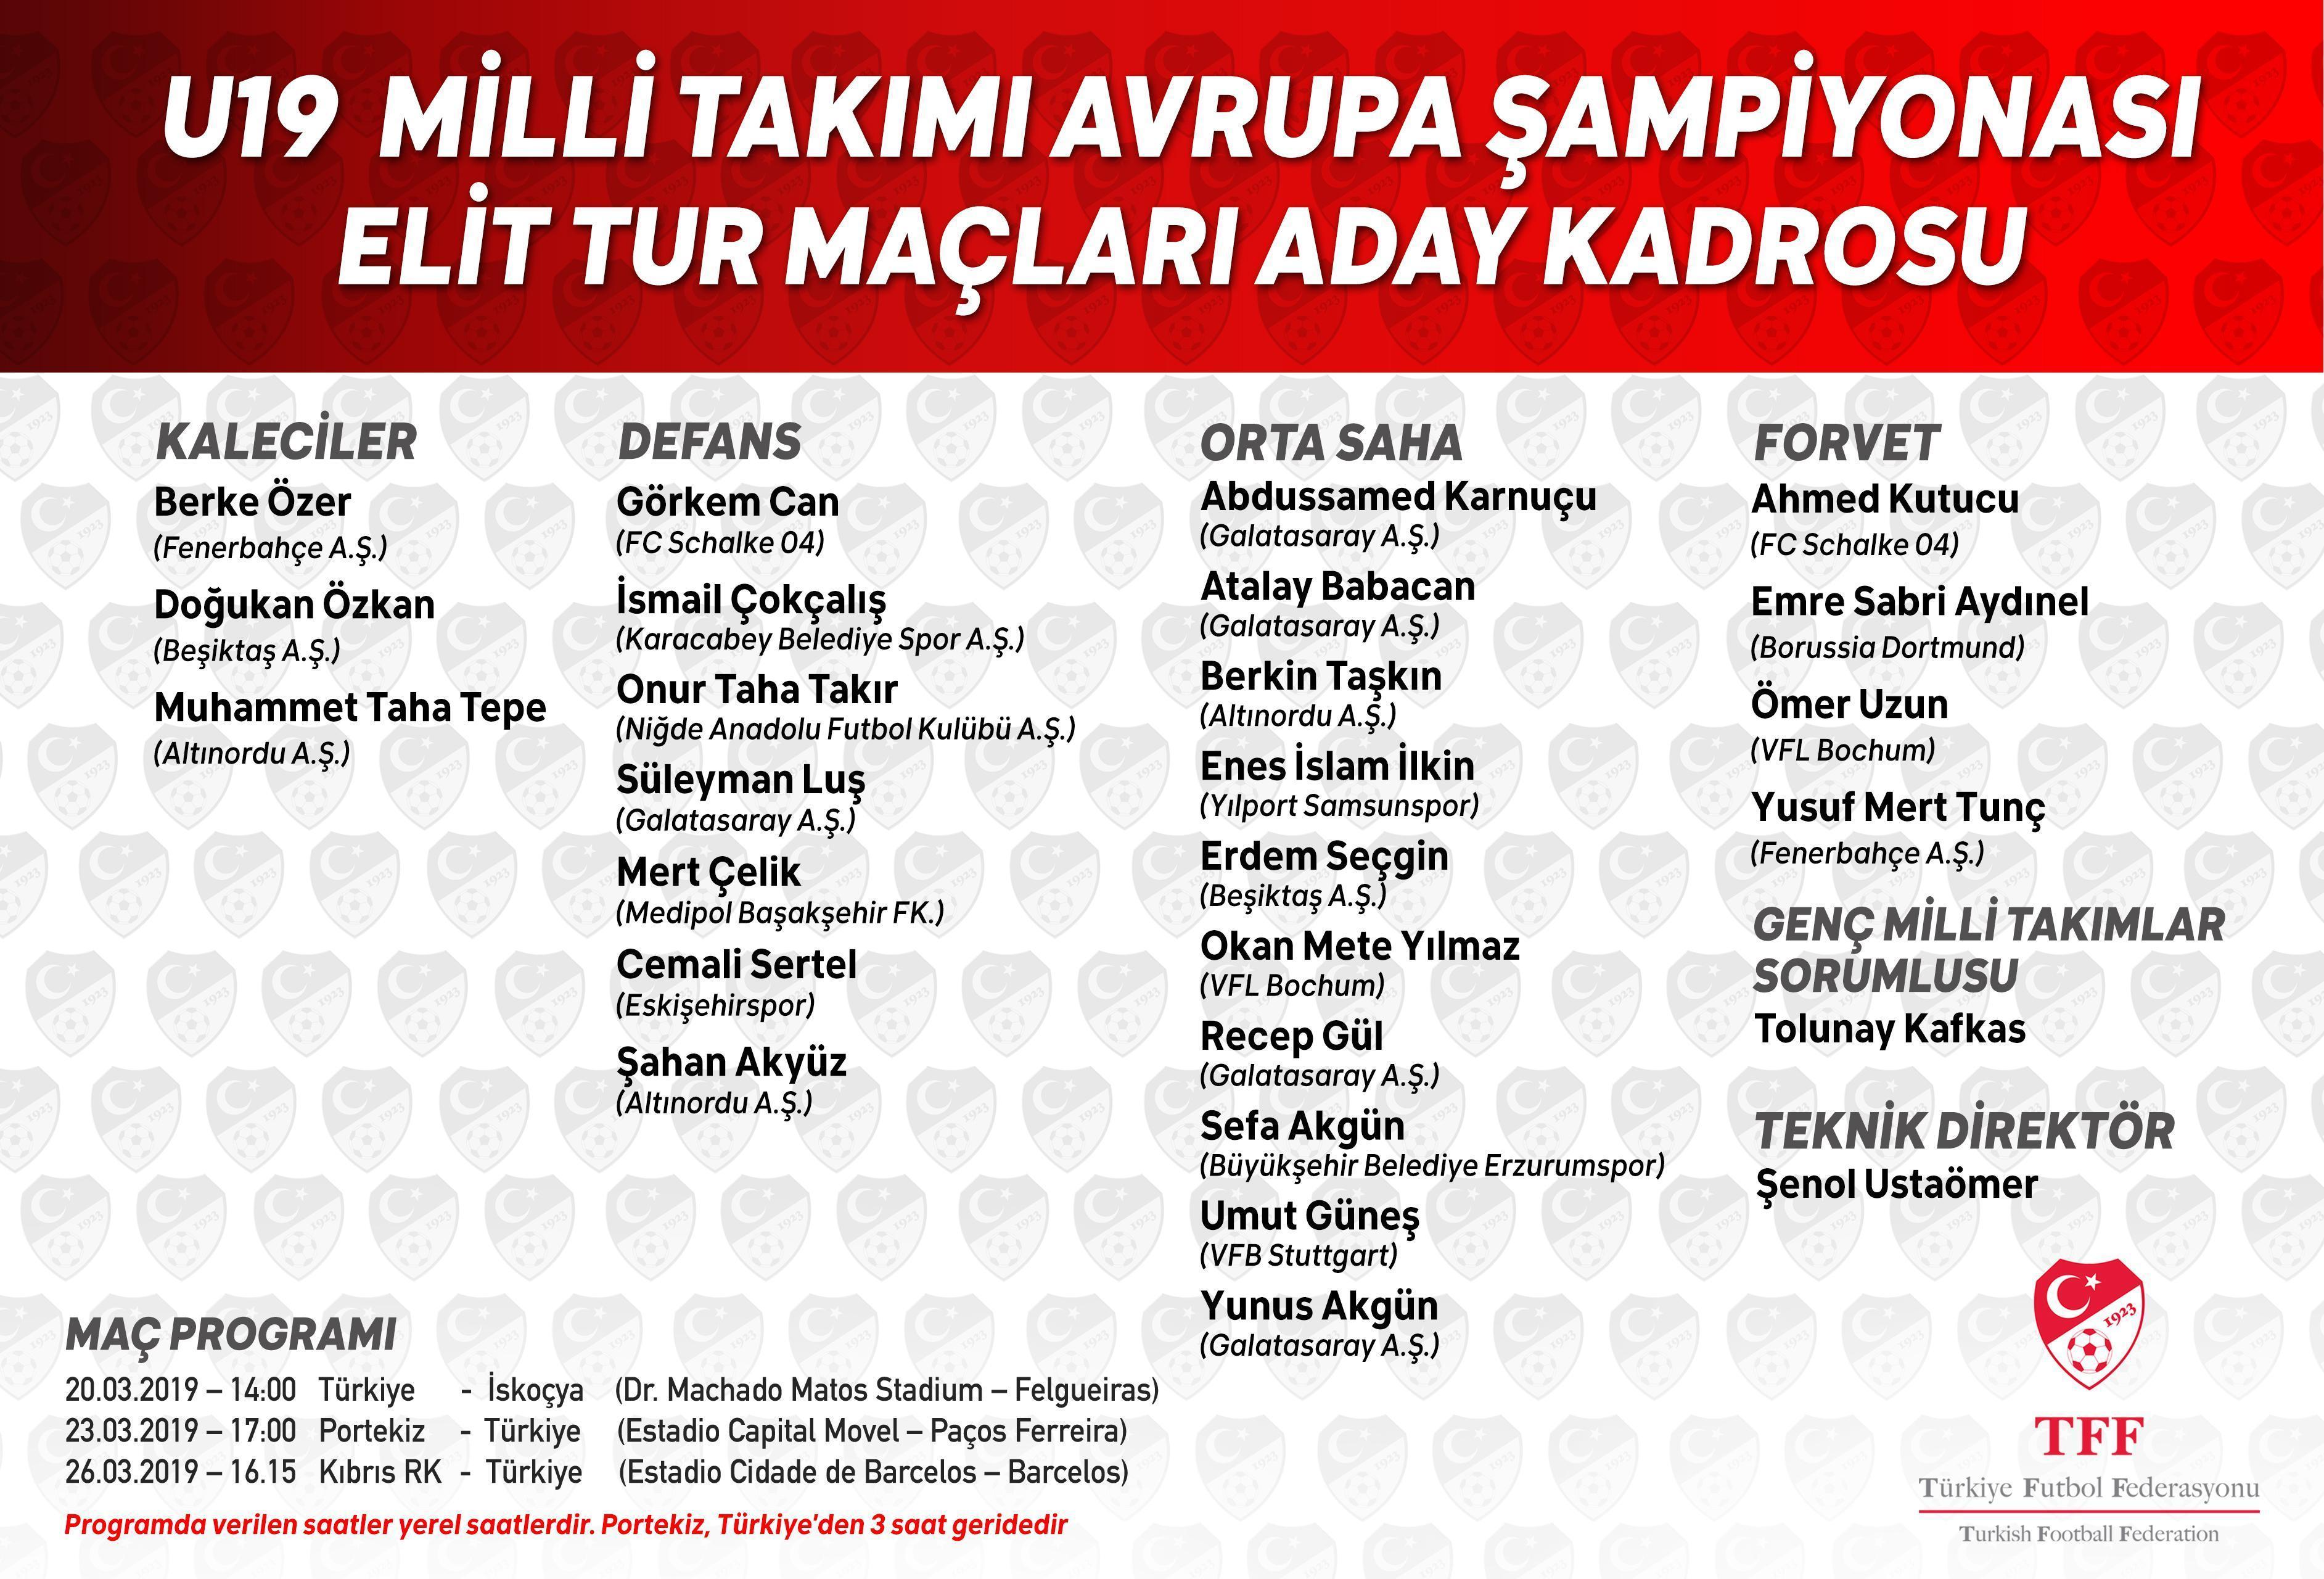 Türkiyenin UEFA U19 Avrupa Şampiyonası Elit Tur maçları aday kadrosu